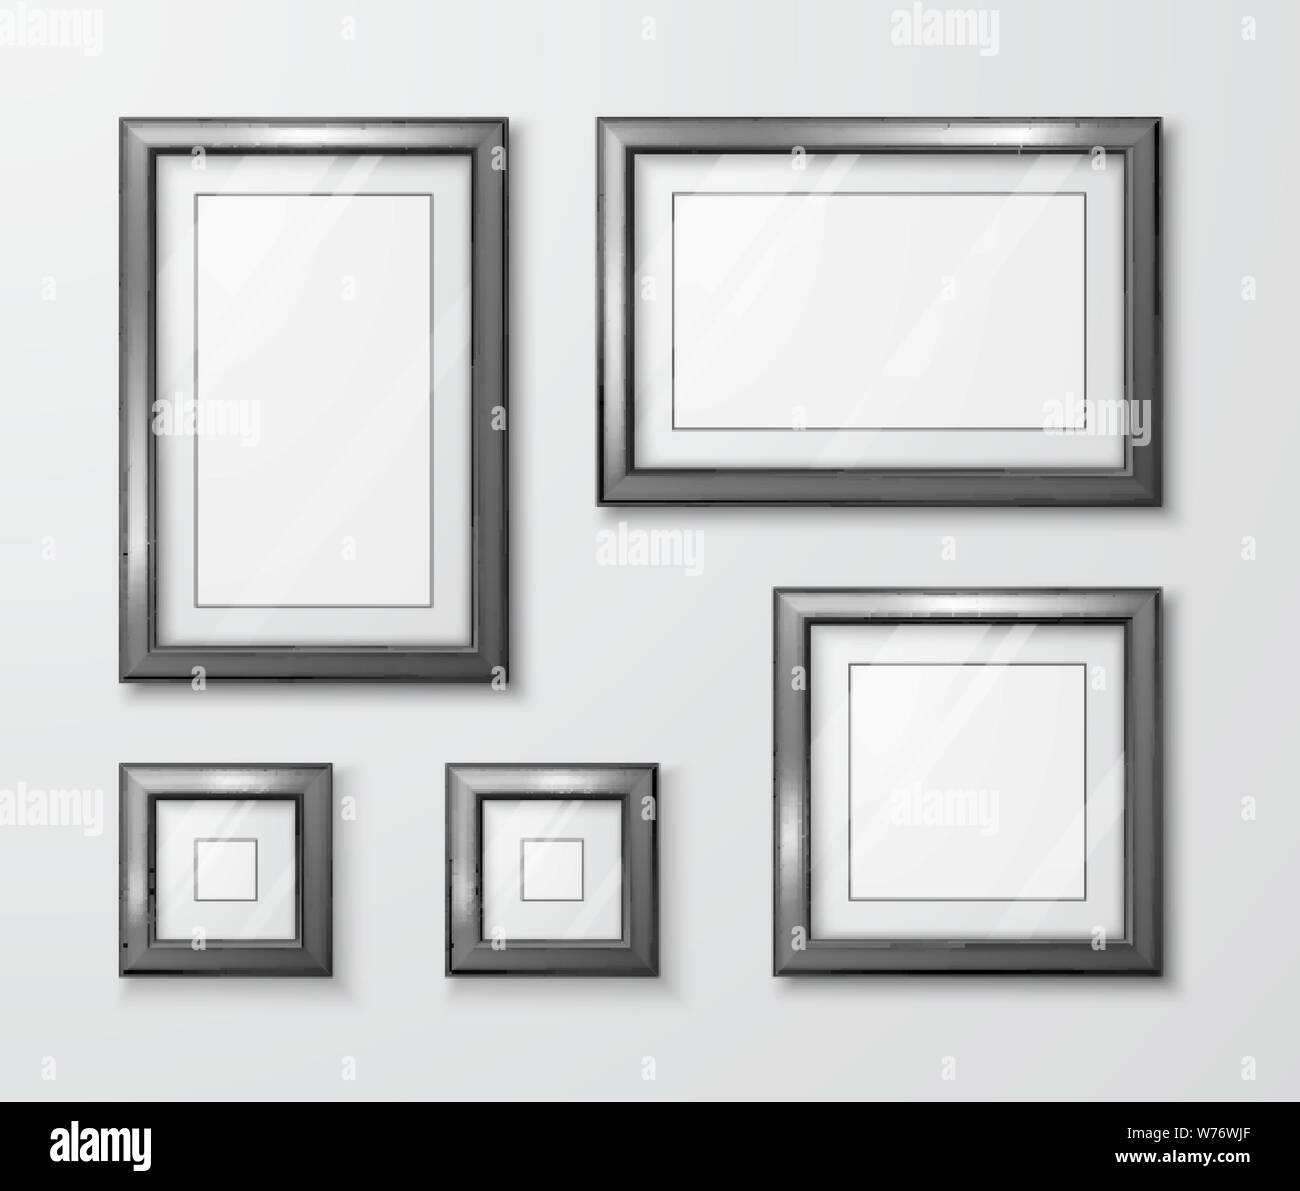 Cornici fotografiche sul muro grigio. Moderno telaio vuoto modello con vetro trasparente e shadow. Illustrazione Vettoriale Illustrazione Vettoriale